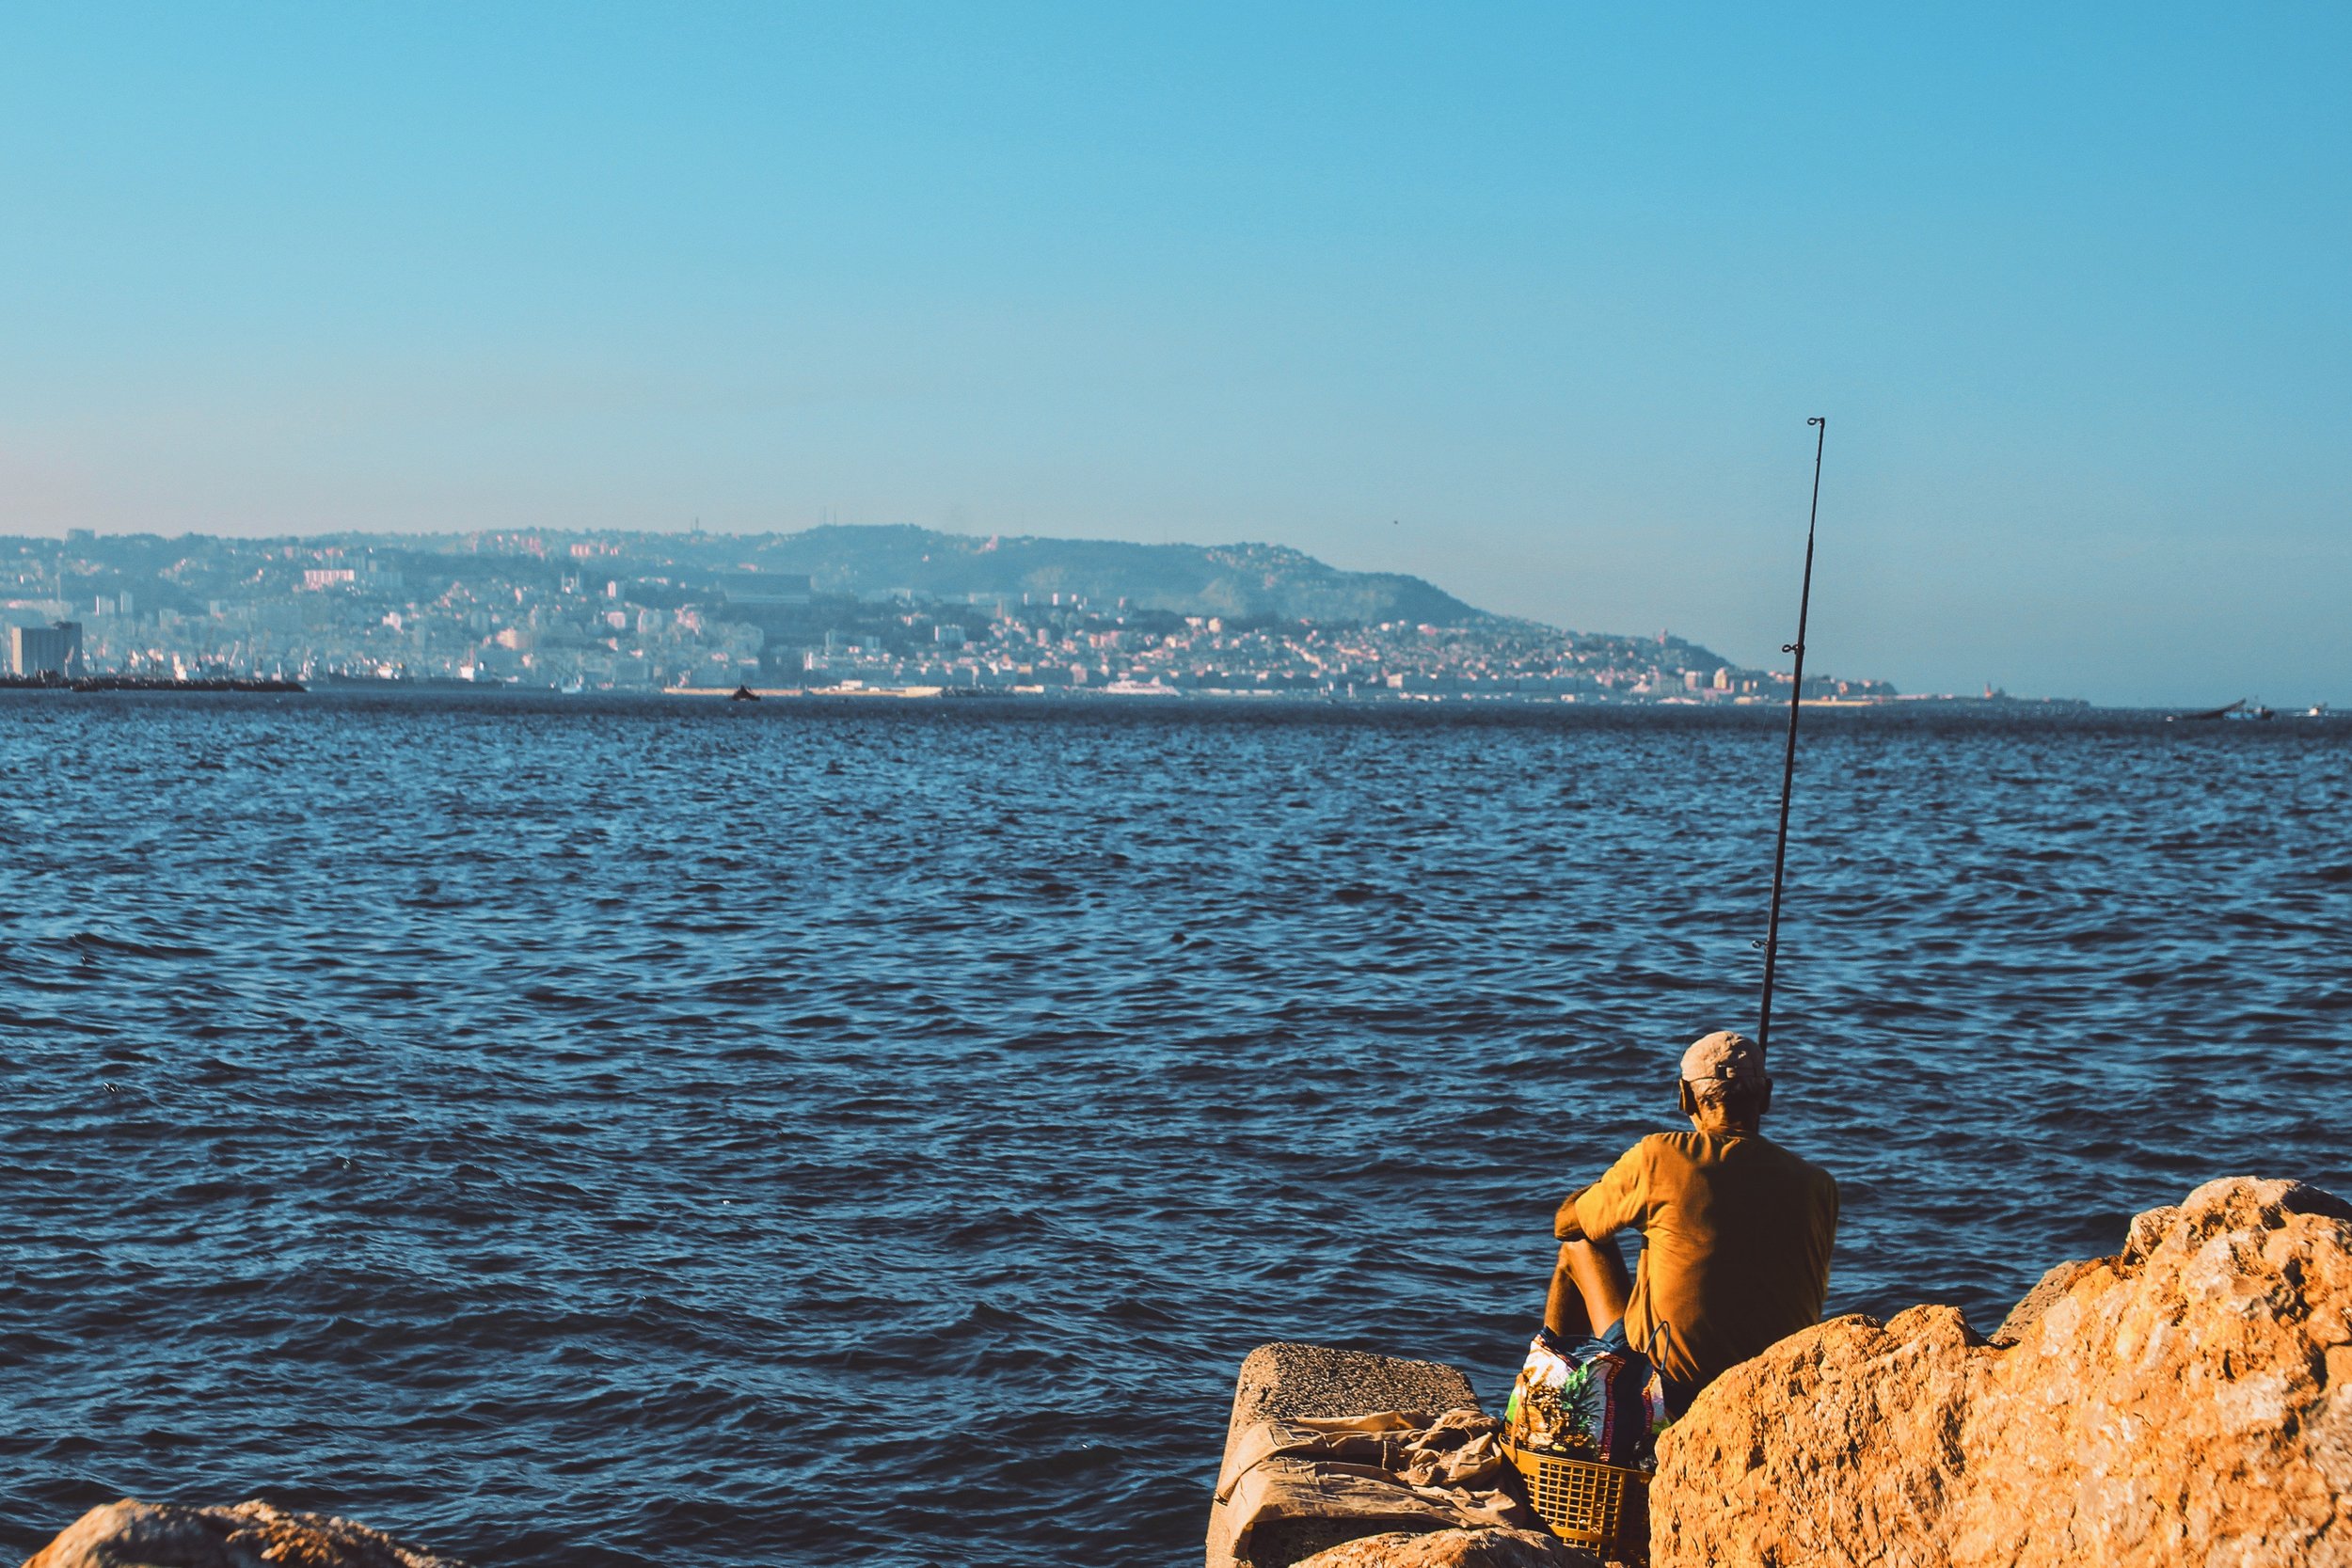 daylight-fisherman-fishing-695928.jpg